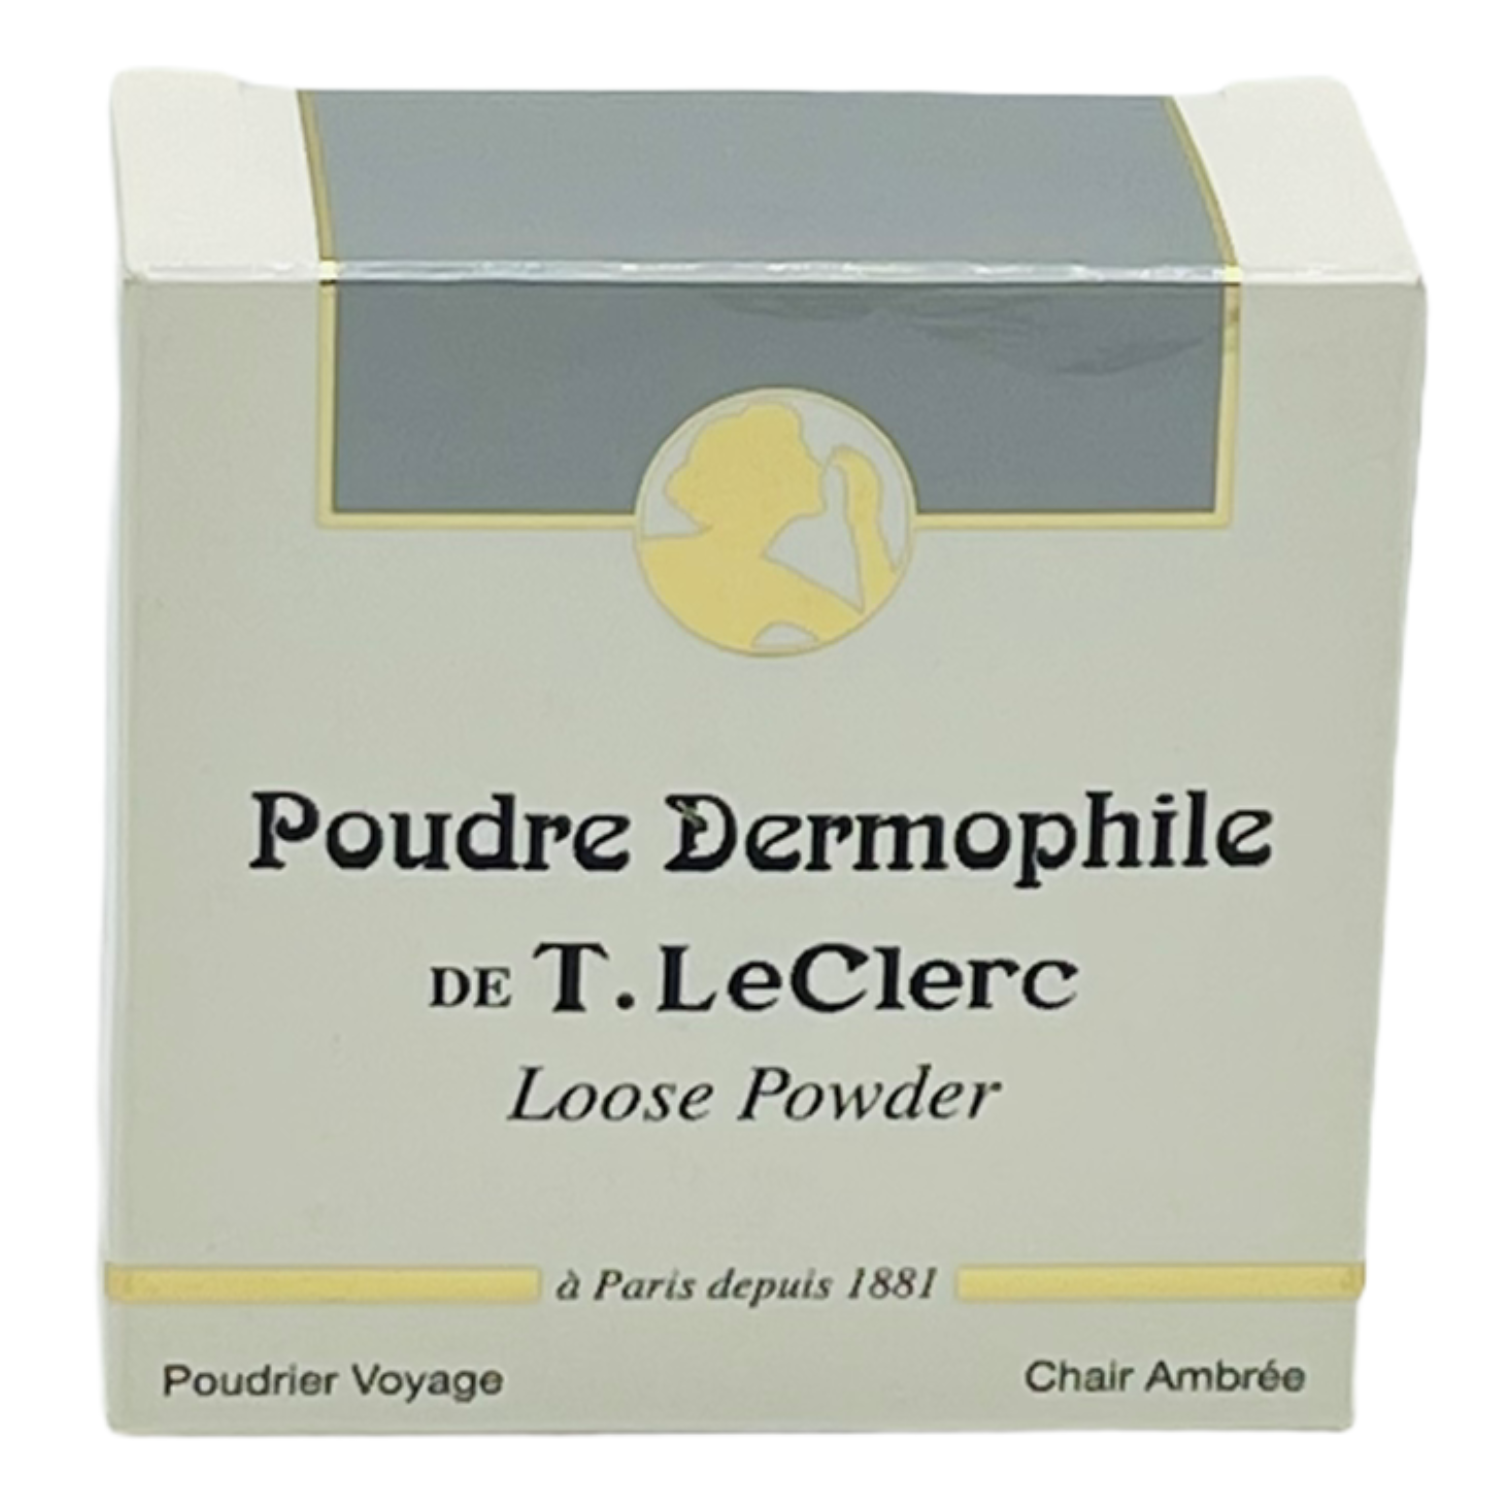 T. Le Clerc Poudre Libre Dermophile 10g